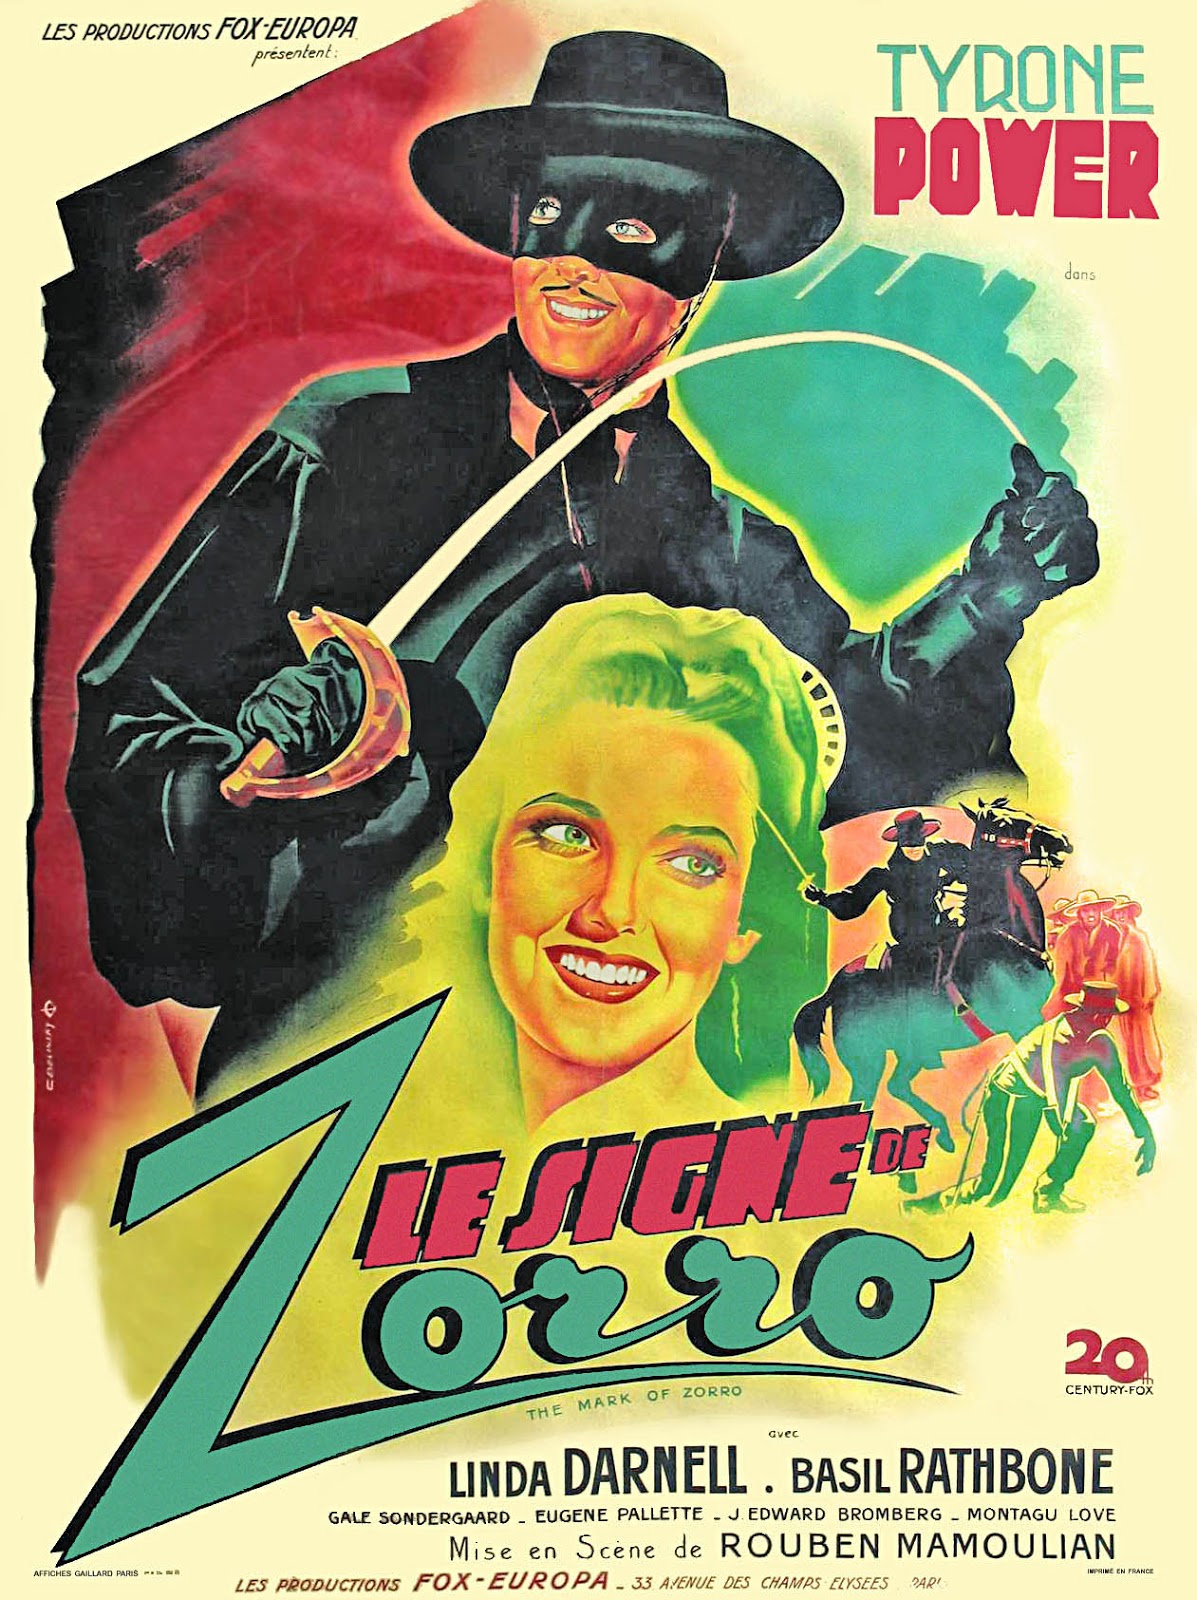 Zorron Merkki [1974 TV Movie]